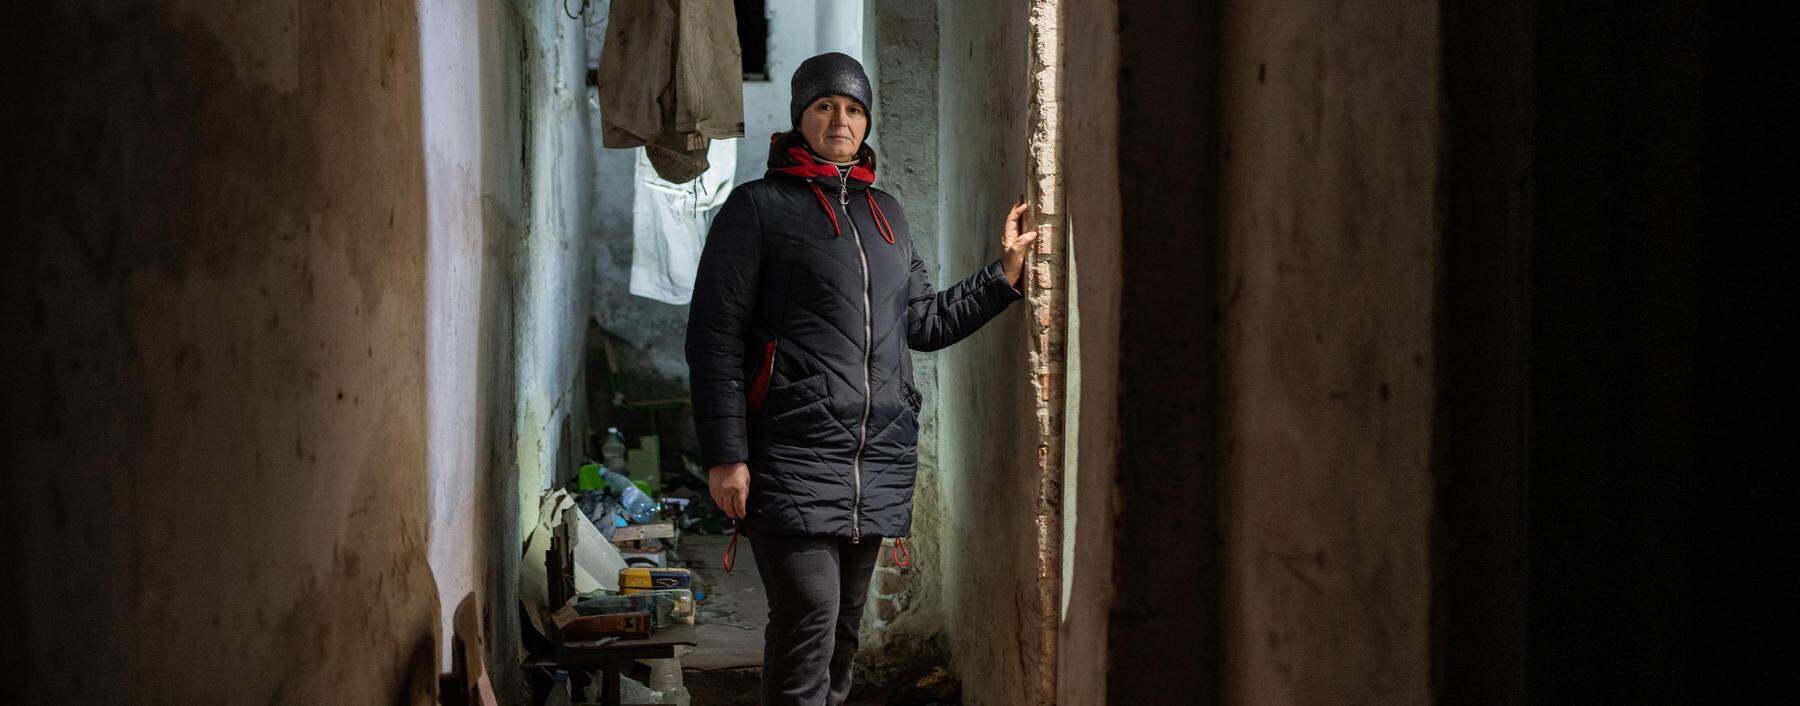 Olha Menjajlo steht in dem Keller, in dem russische Soldaten sie fast einen Monat lang gefangen hielten.